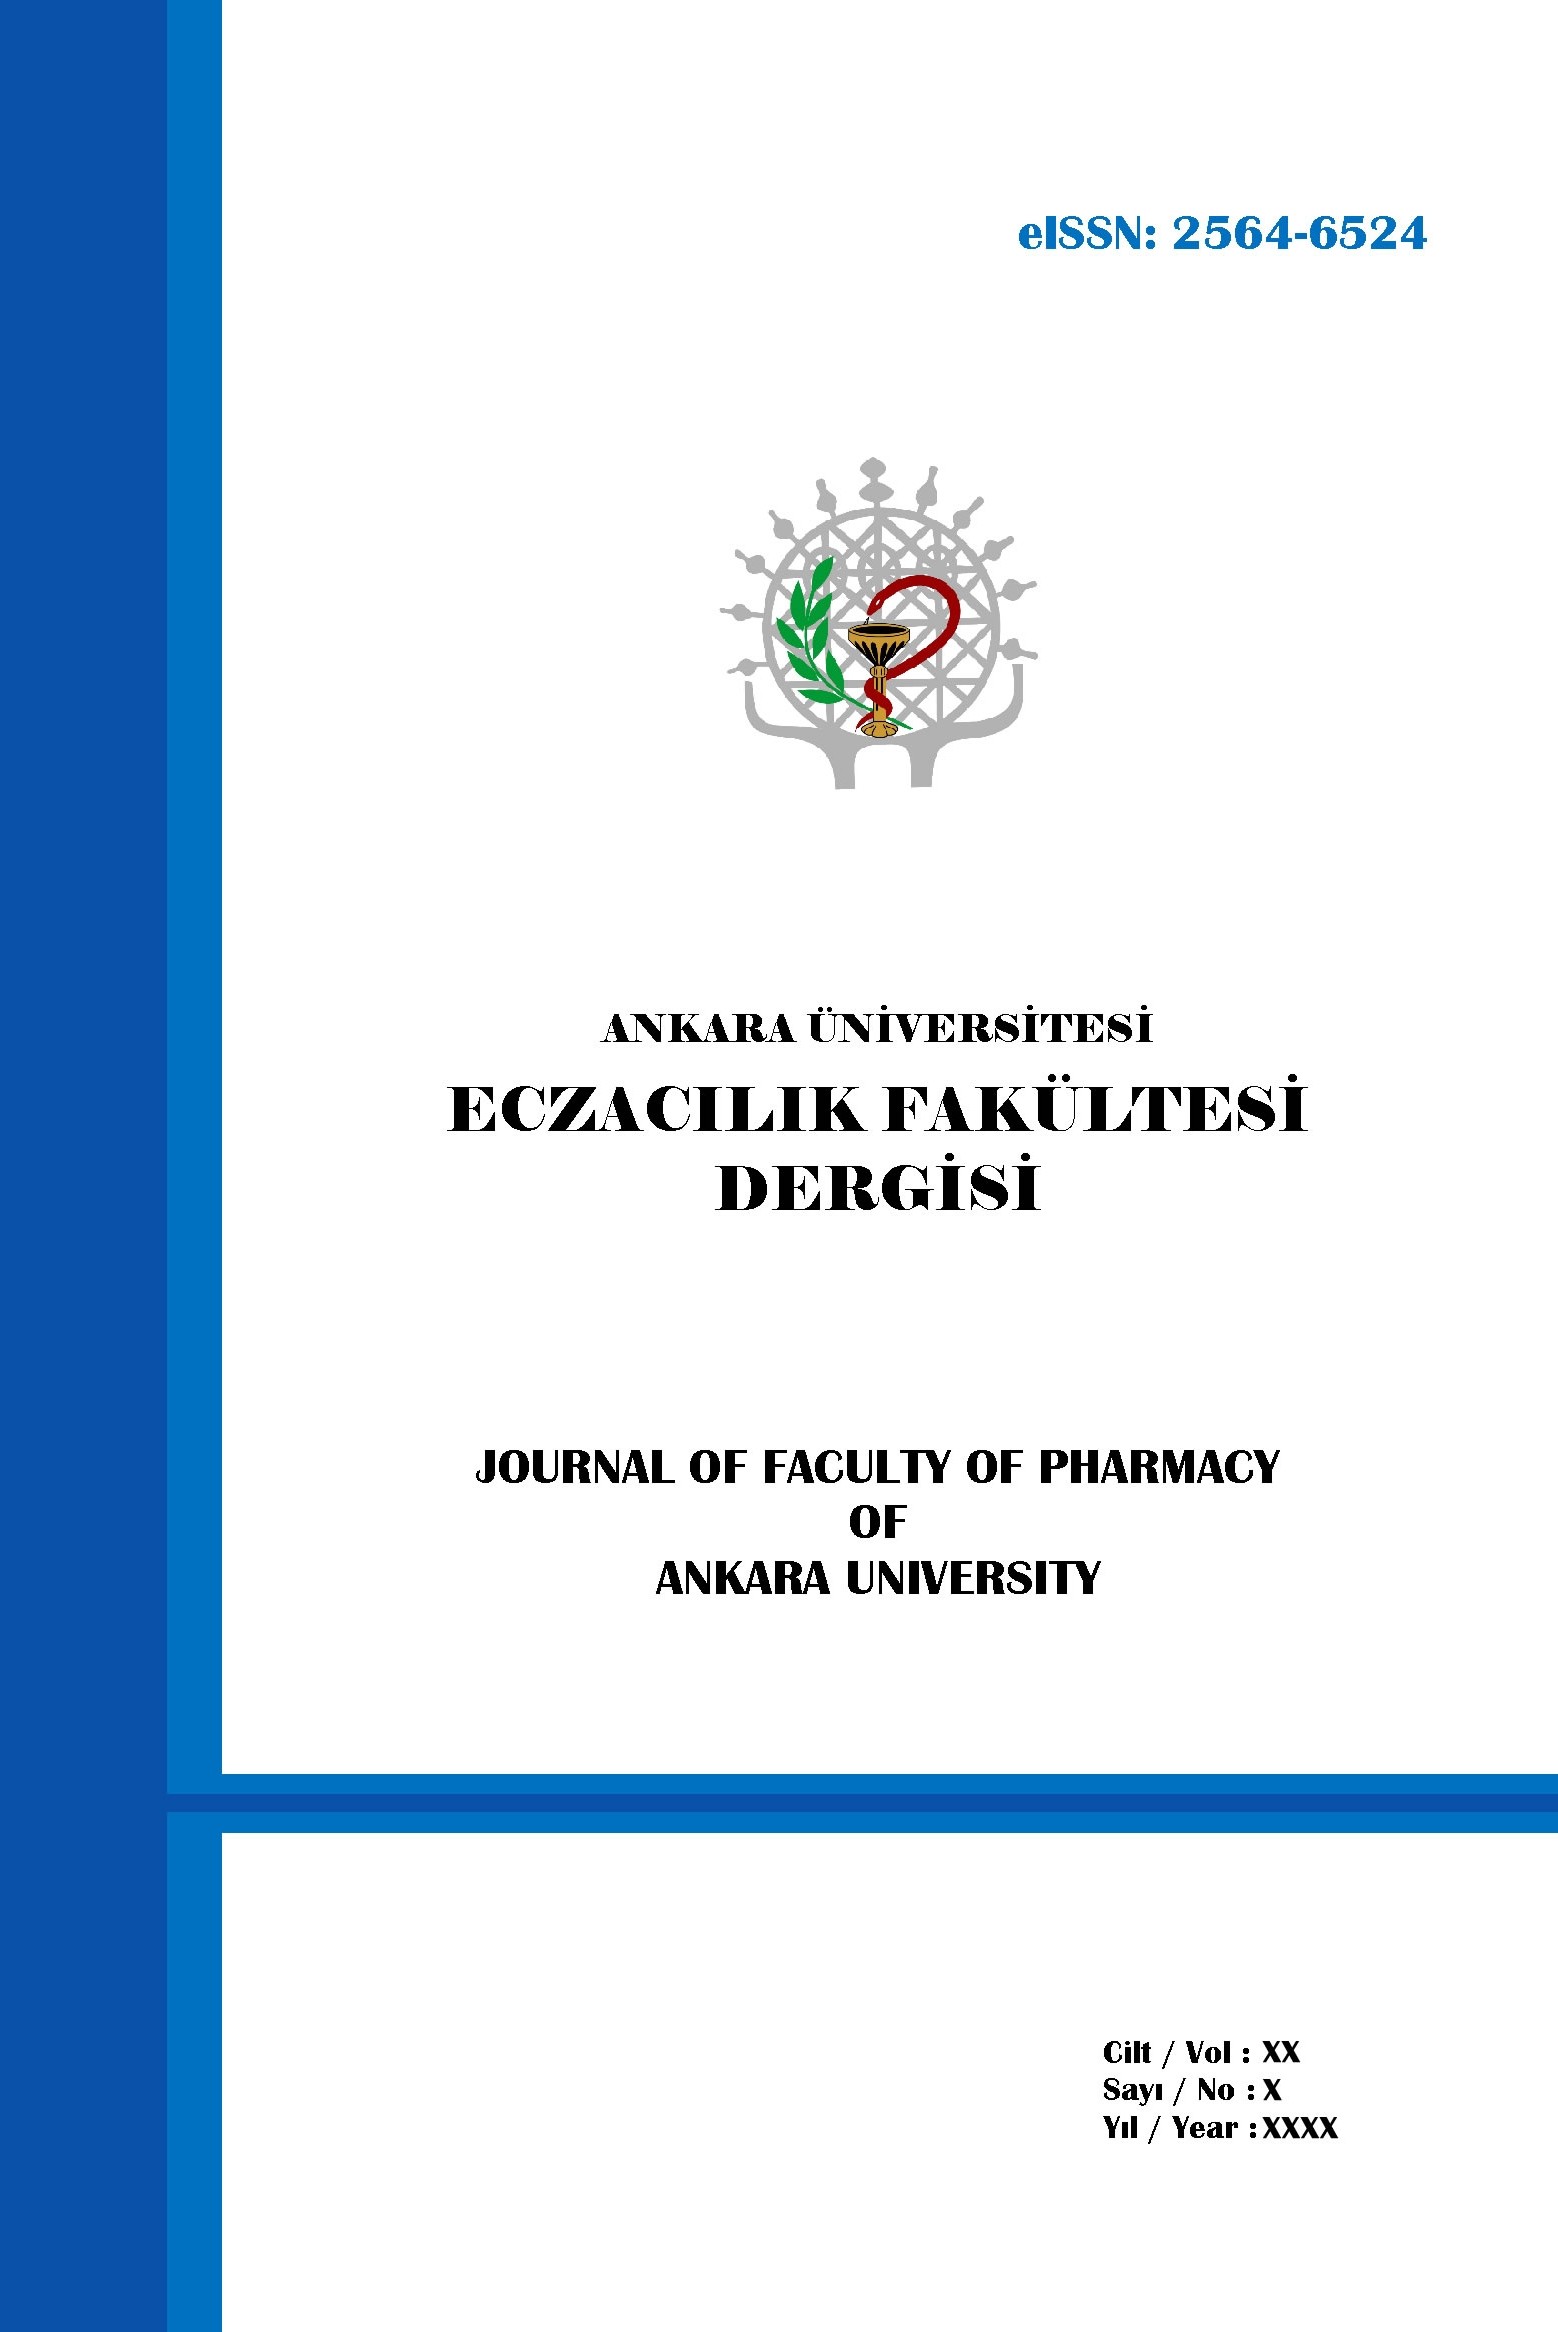 Journal of Faculty of Pharmacy of Ankara University